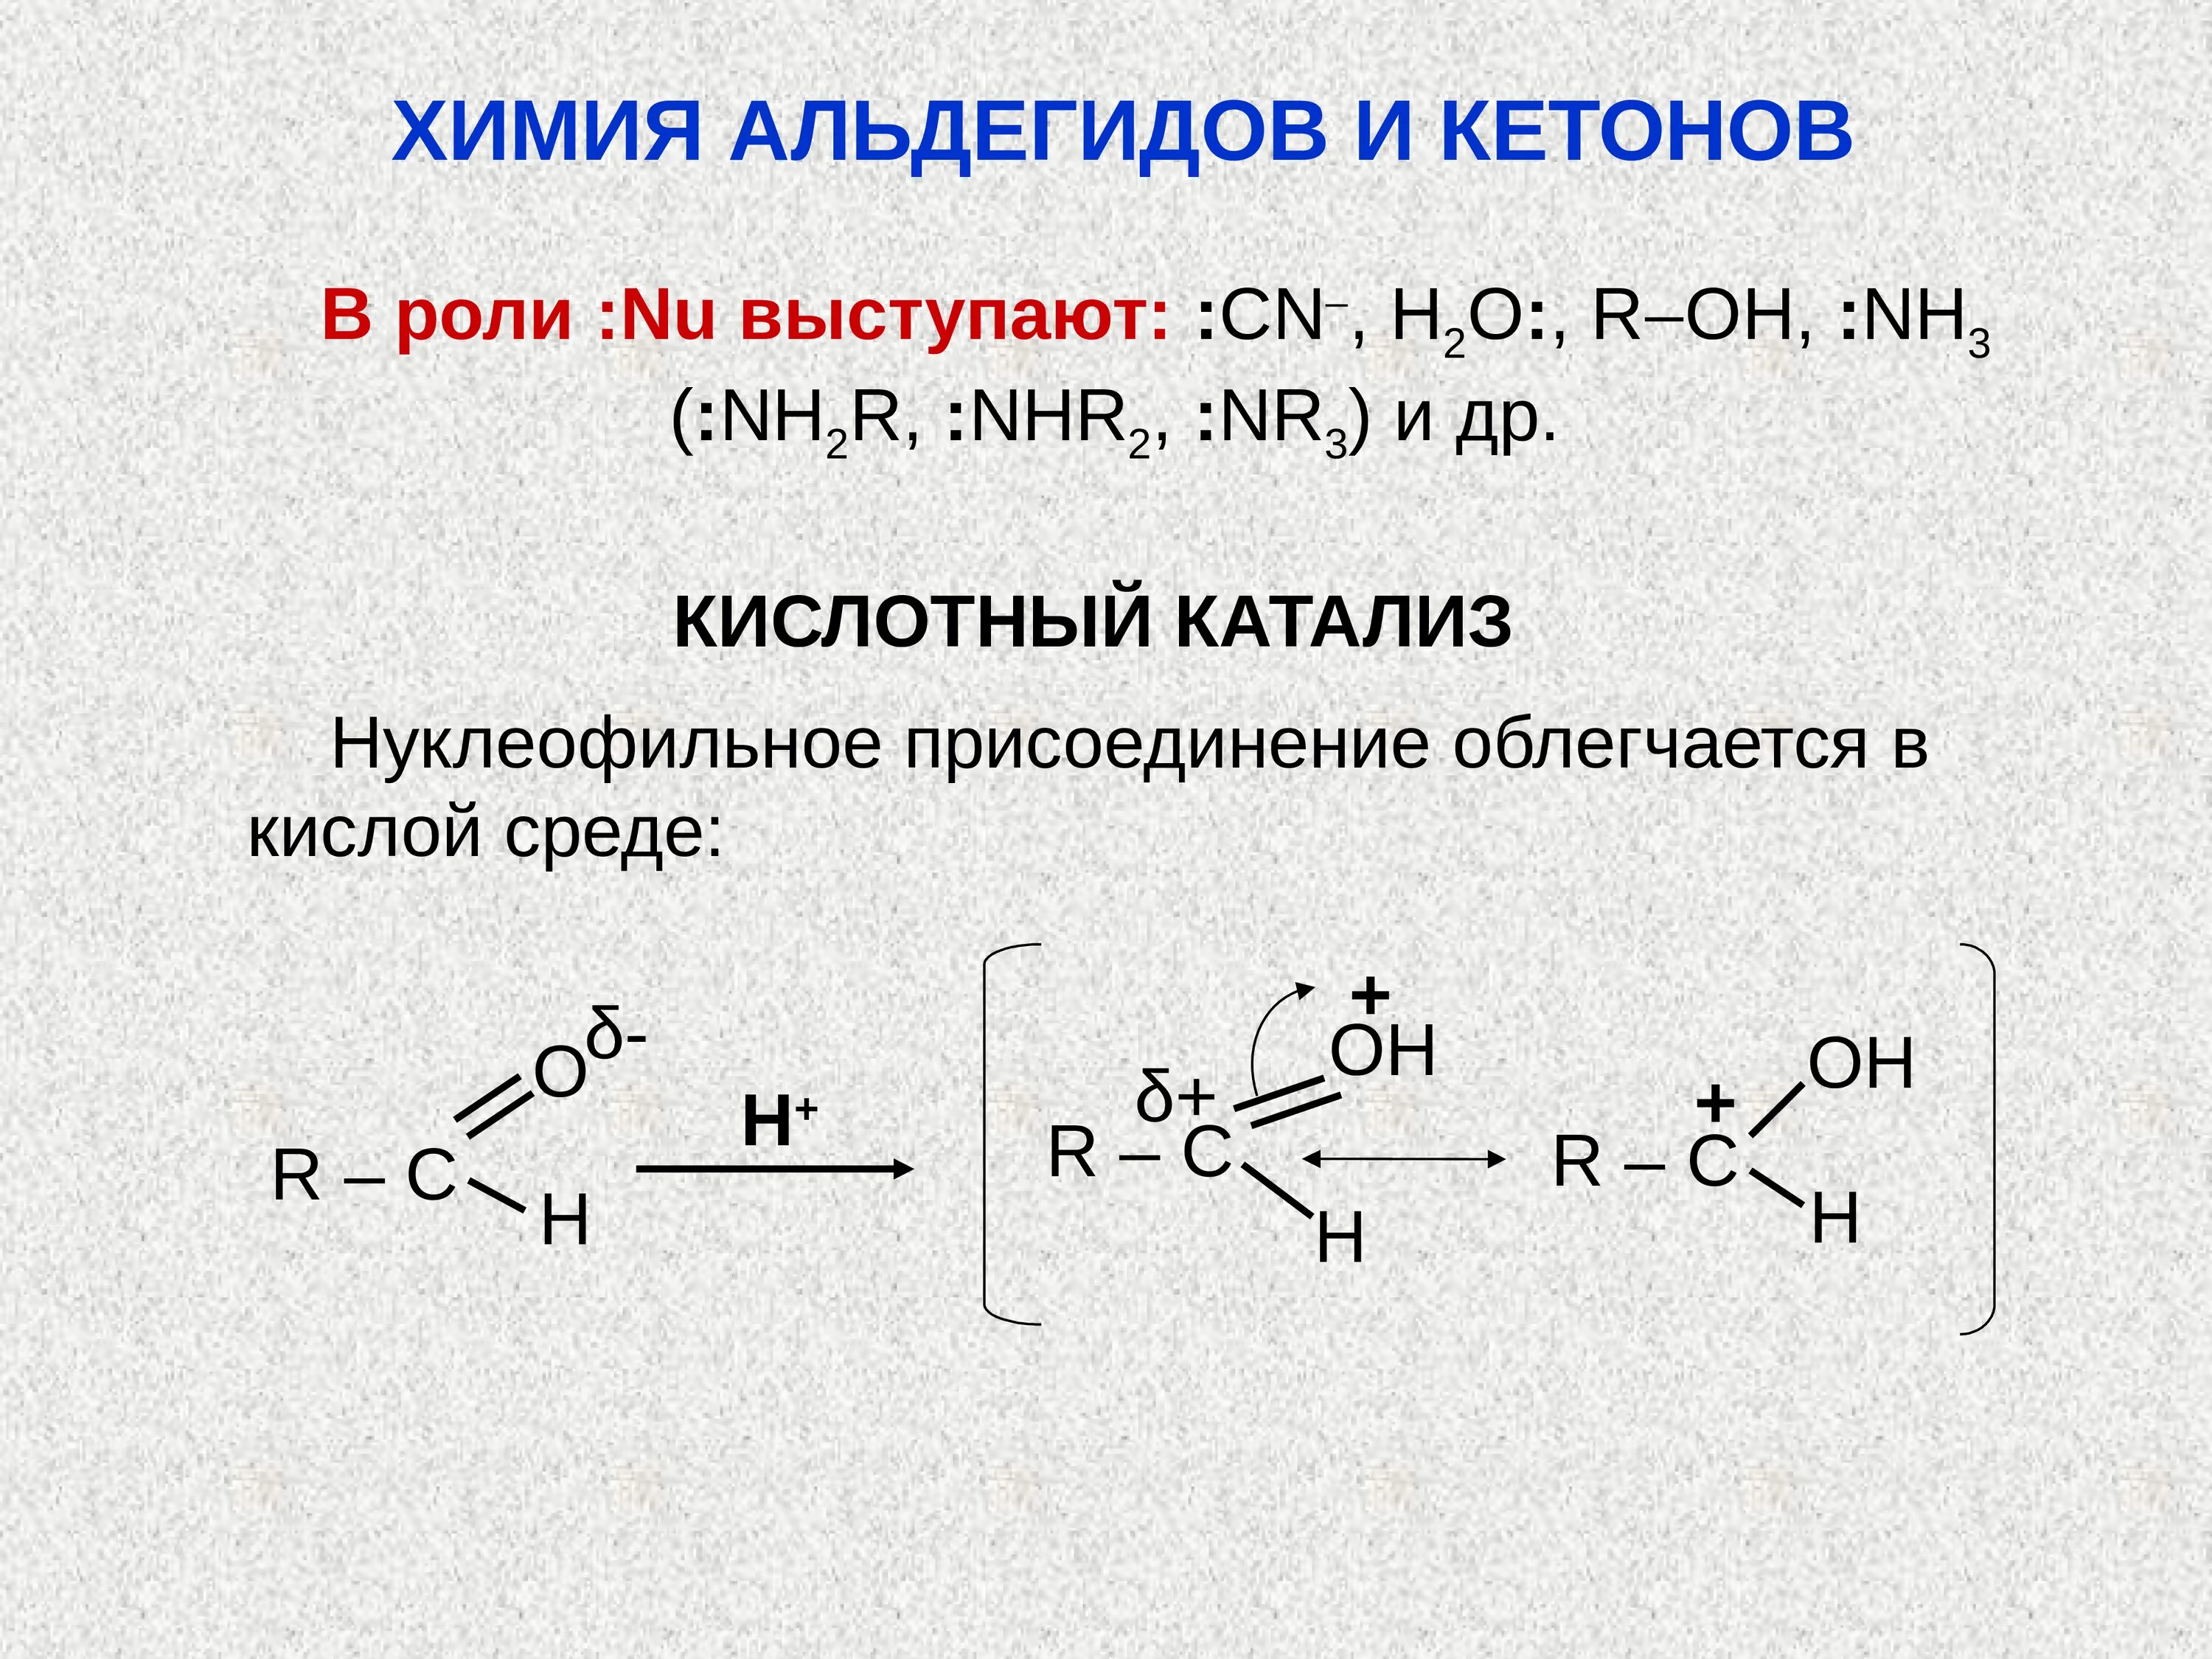 Щелочной катализ альдегида. Кислотный катализ альдегидов. Основный катализ альдегидов и кетонов. Роль кислотного катализа альдегидов и кетонов.